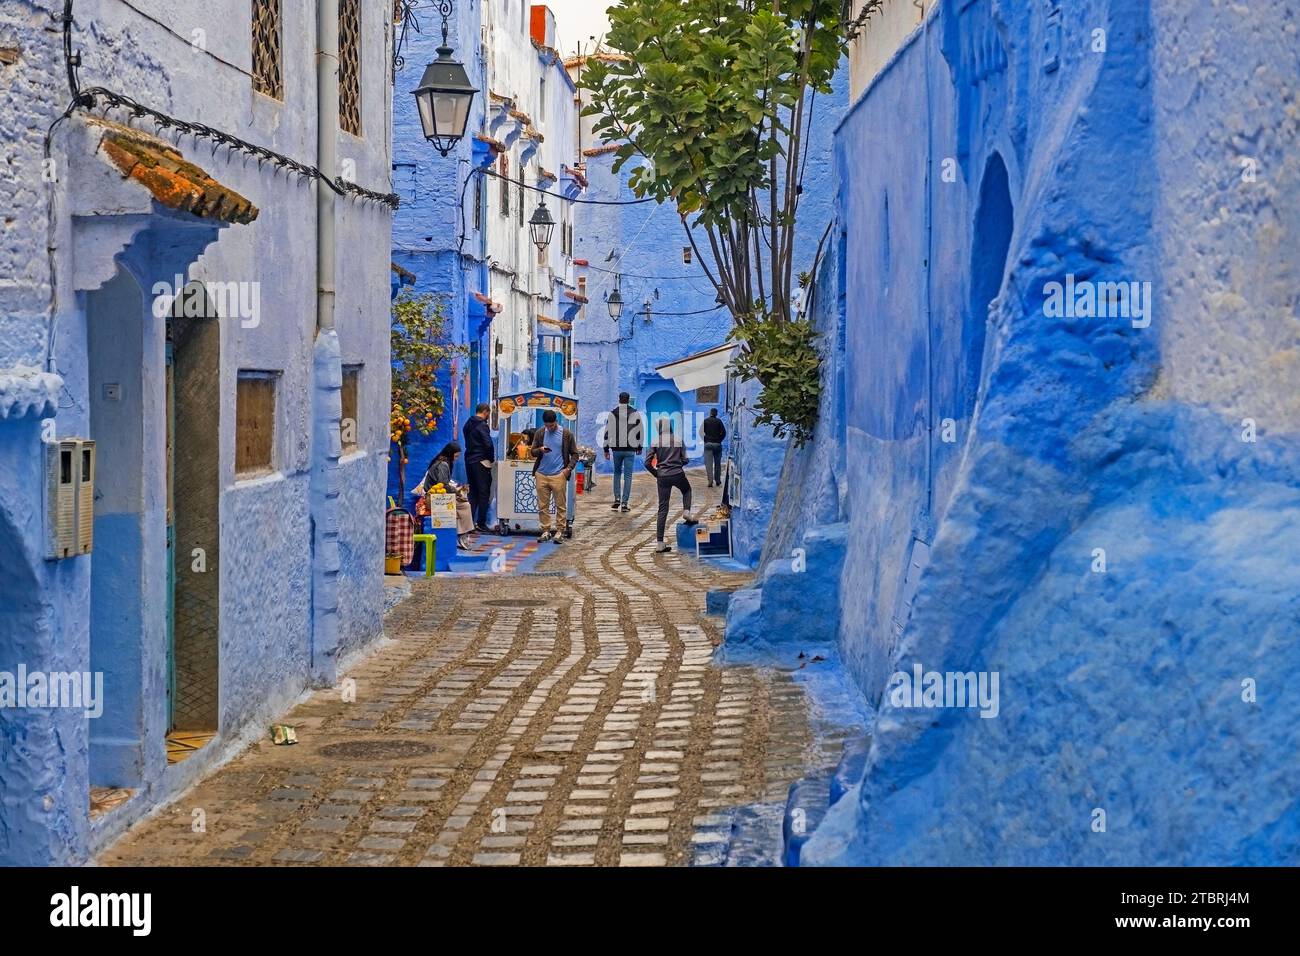 Marocains dans une ruelle étroite avec des maisons bleues dans la médina / vieille ville historique de la ville Chefchaouen / Chaouen, Maroc Banque D'Images